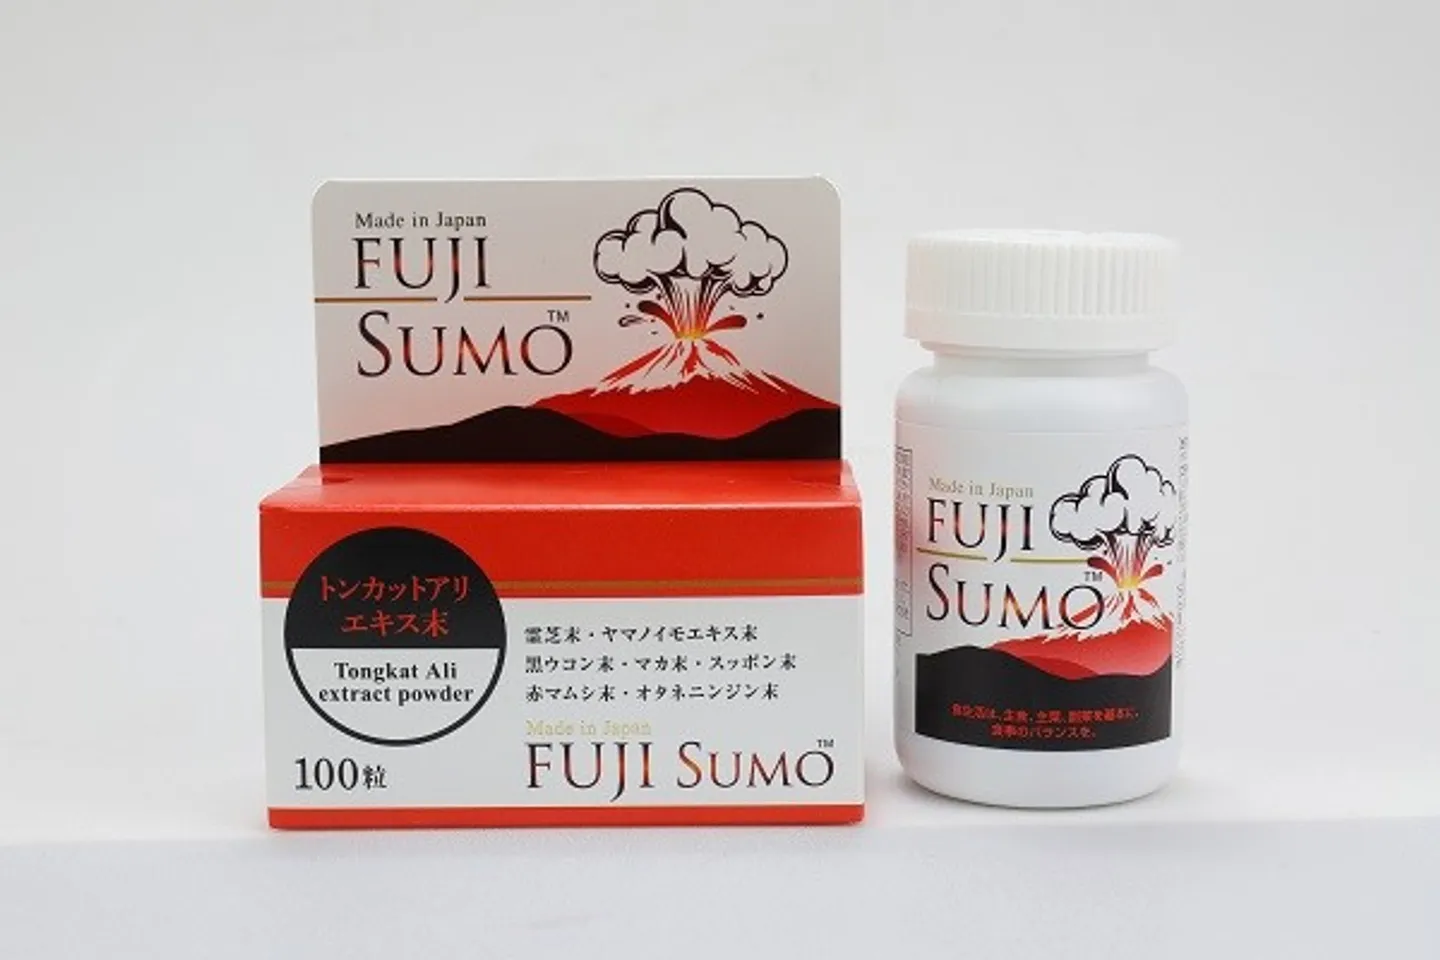 Fuji sumo viên uống tăng cường sinh lý nam giới 1